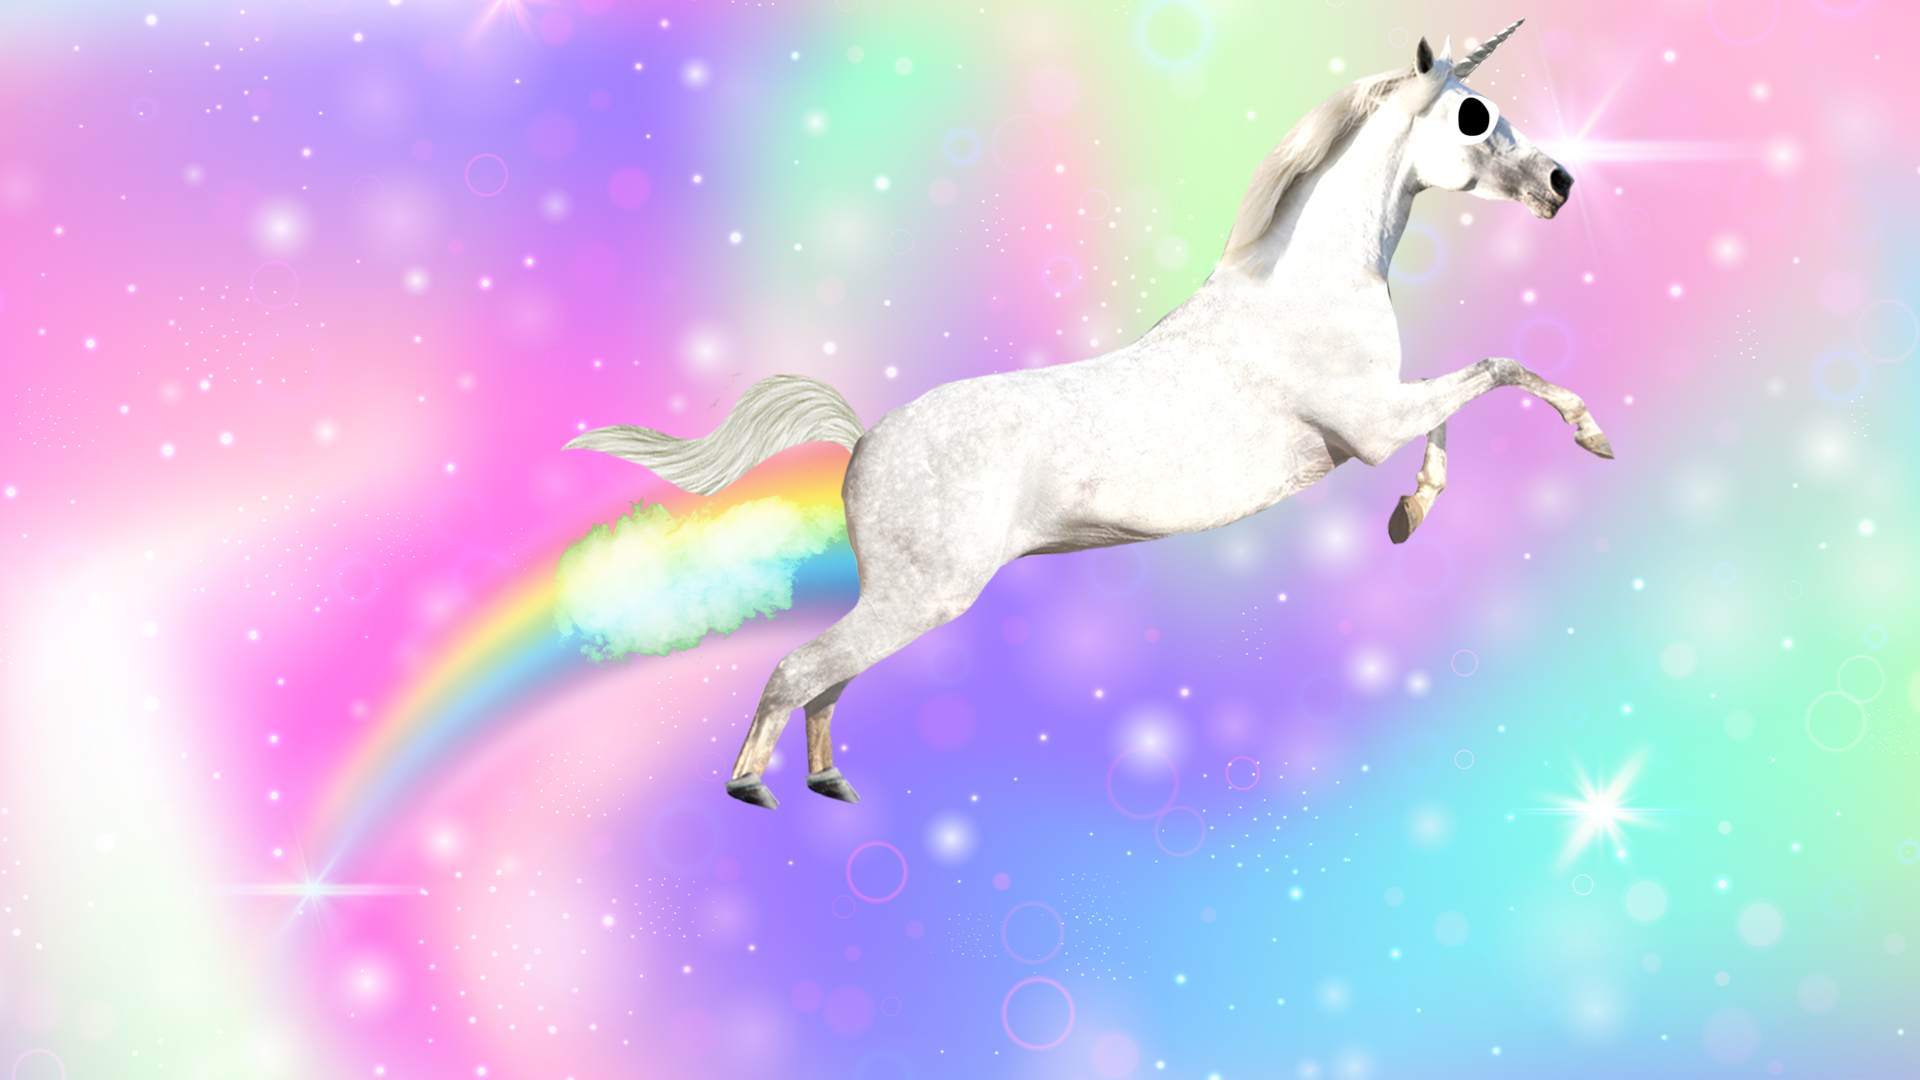 Unicorn farting a rainbow on rainbow backgroud